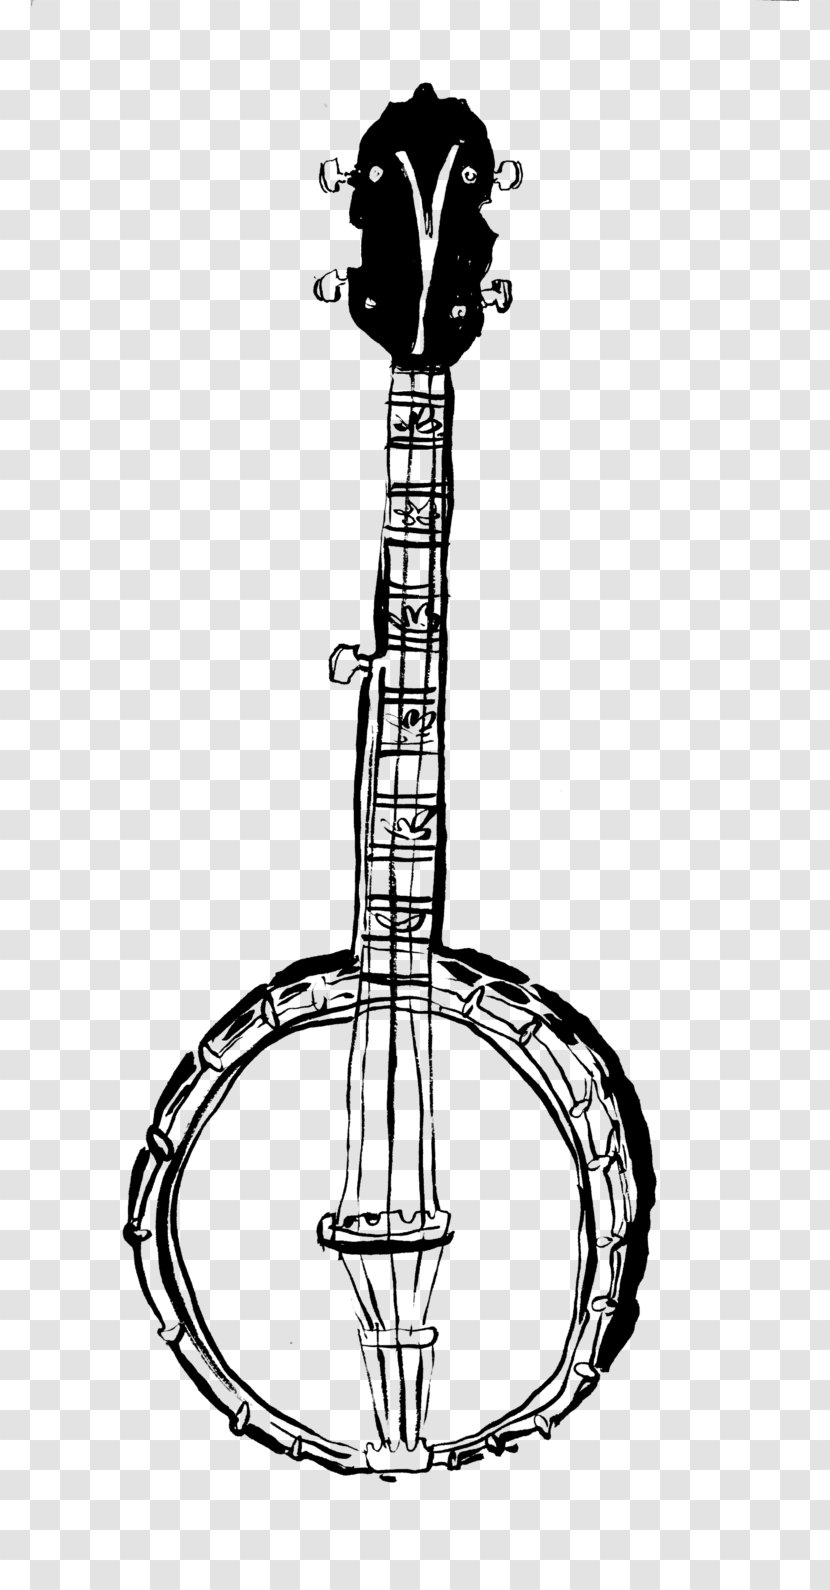 Beer Berliner Weisse Plucked String Instrument Saison Musical Instruments - Line Art - Banjo Transparent PNG